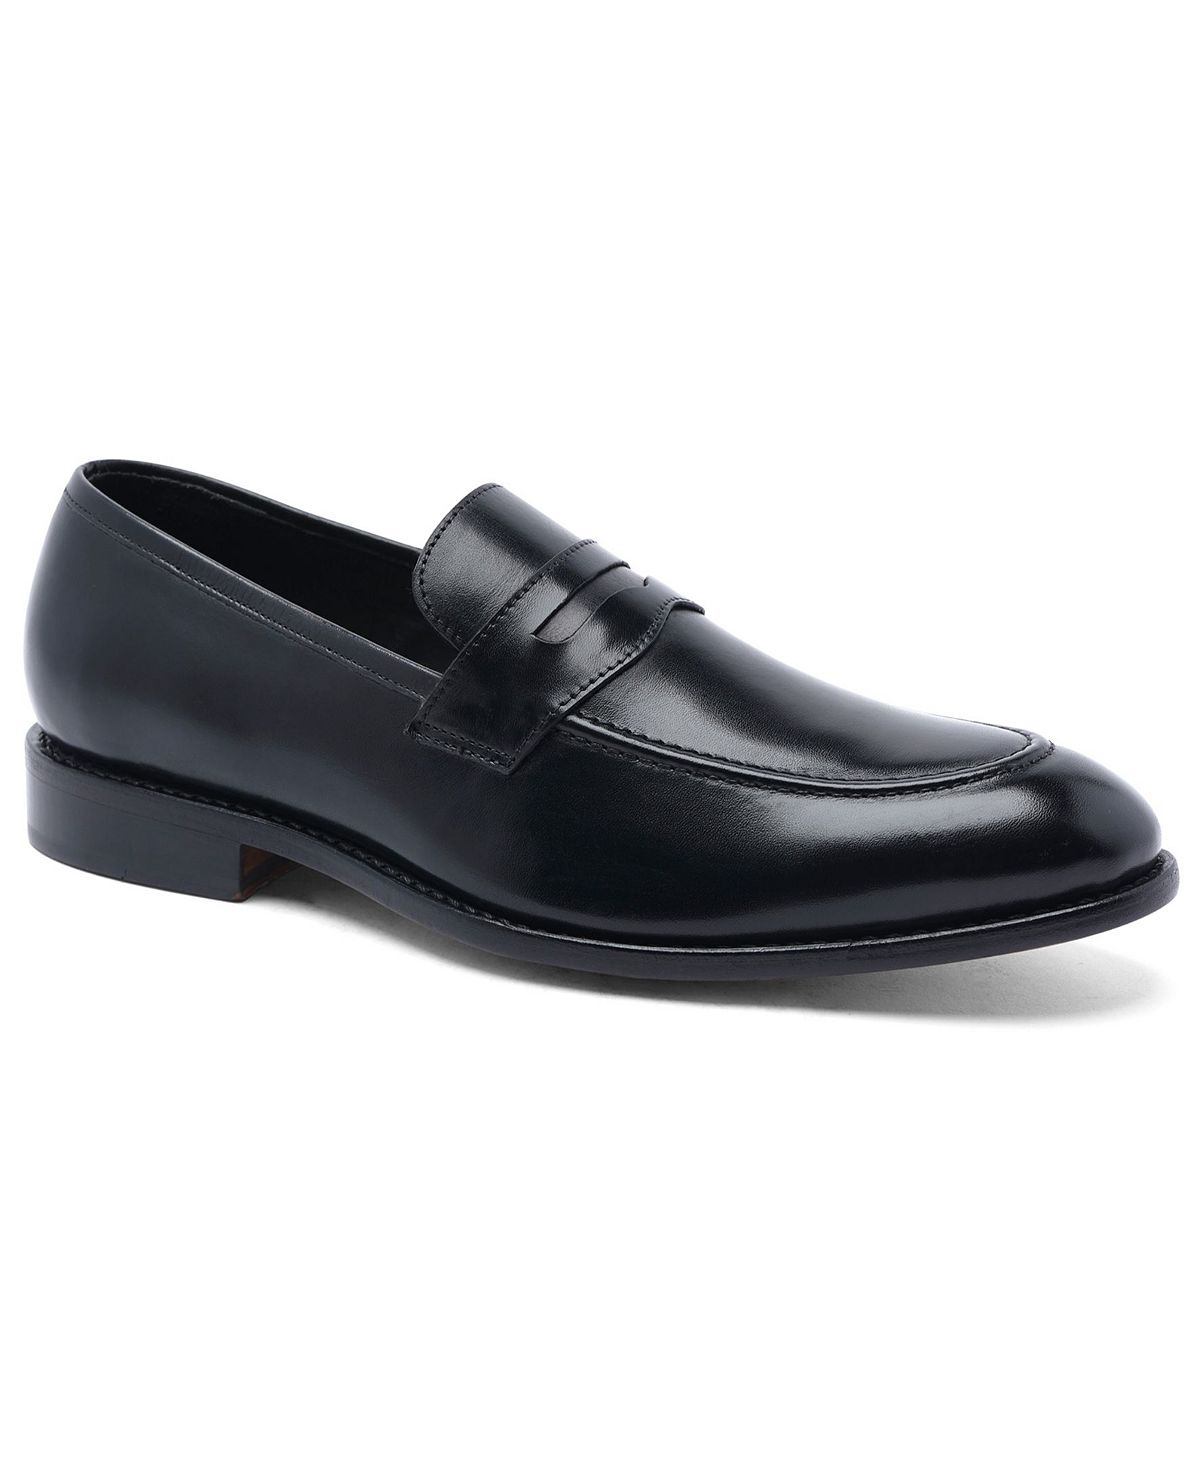 Мужские модельные туфли goodyear без шнурков gerry penny loafer Anthony Veer, черный